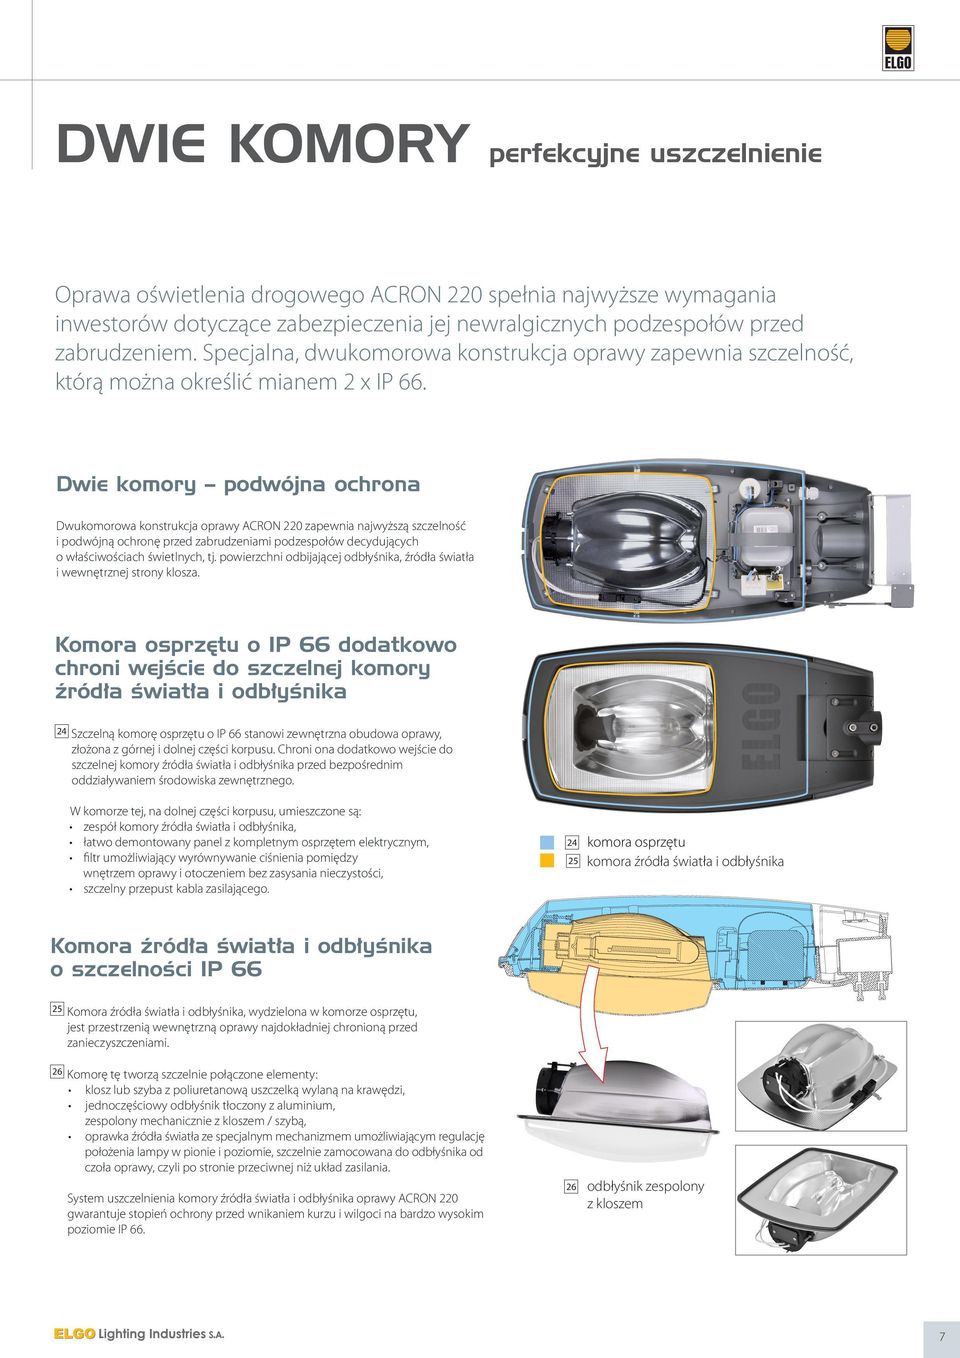 Dwie komory podwójna ochrona Dwukomorowa konstrukcja oprawy ACRON 220 zapewnia najwyższą szczelność i podwójną ochronę przed zabrudzeniami podzespołów decydujących o właściwościach świetlnych, tj.